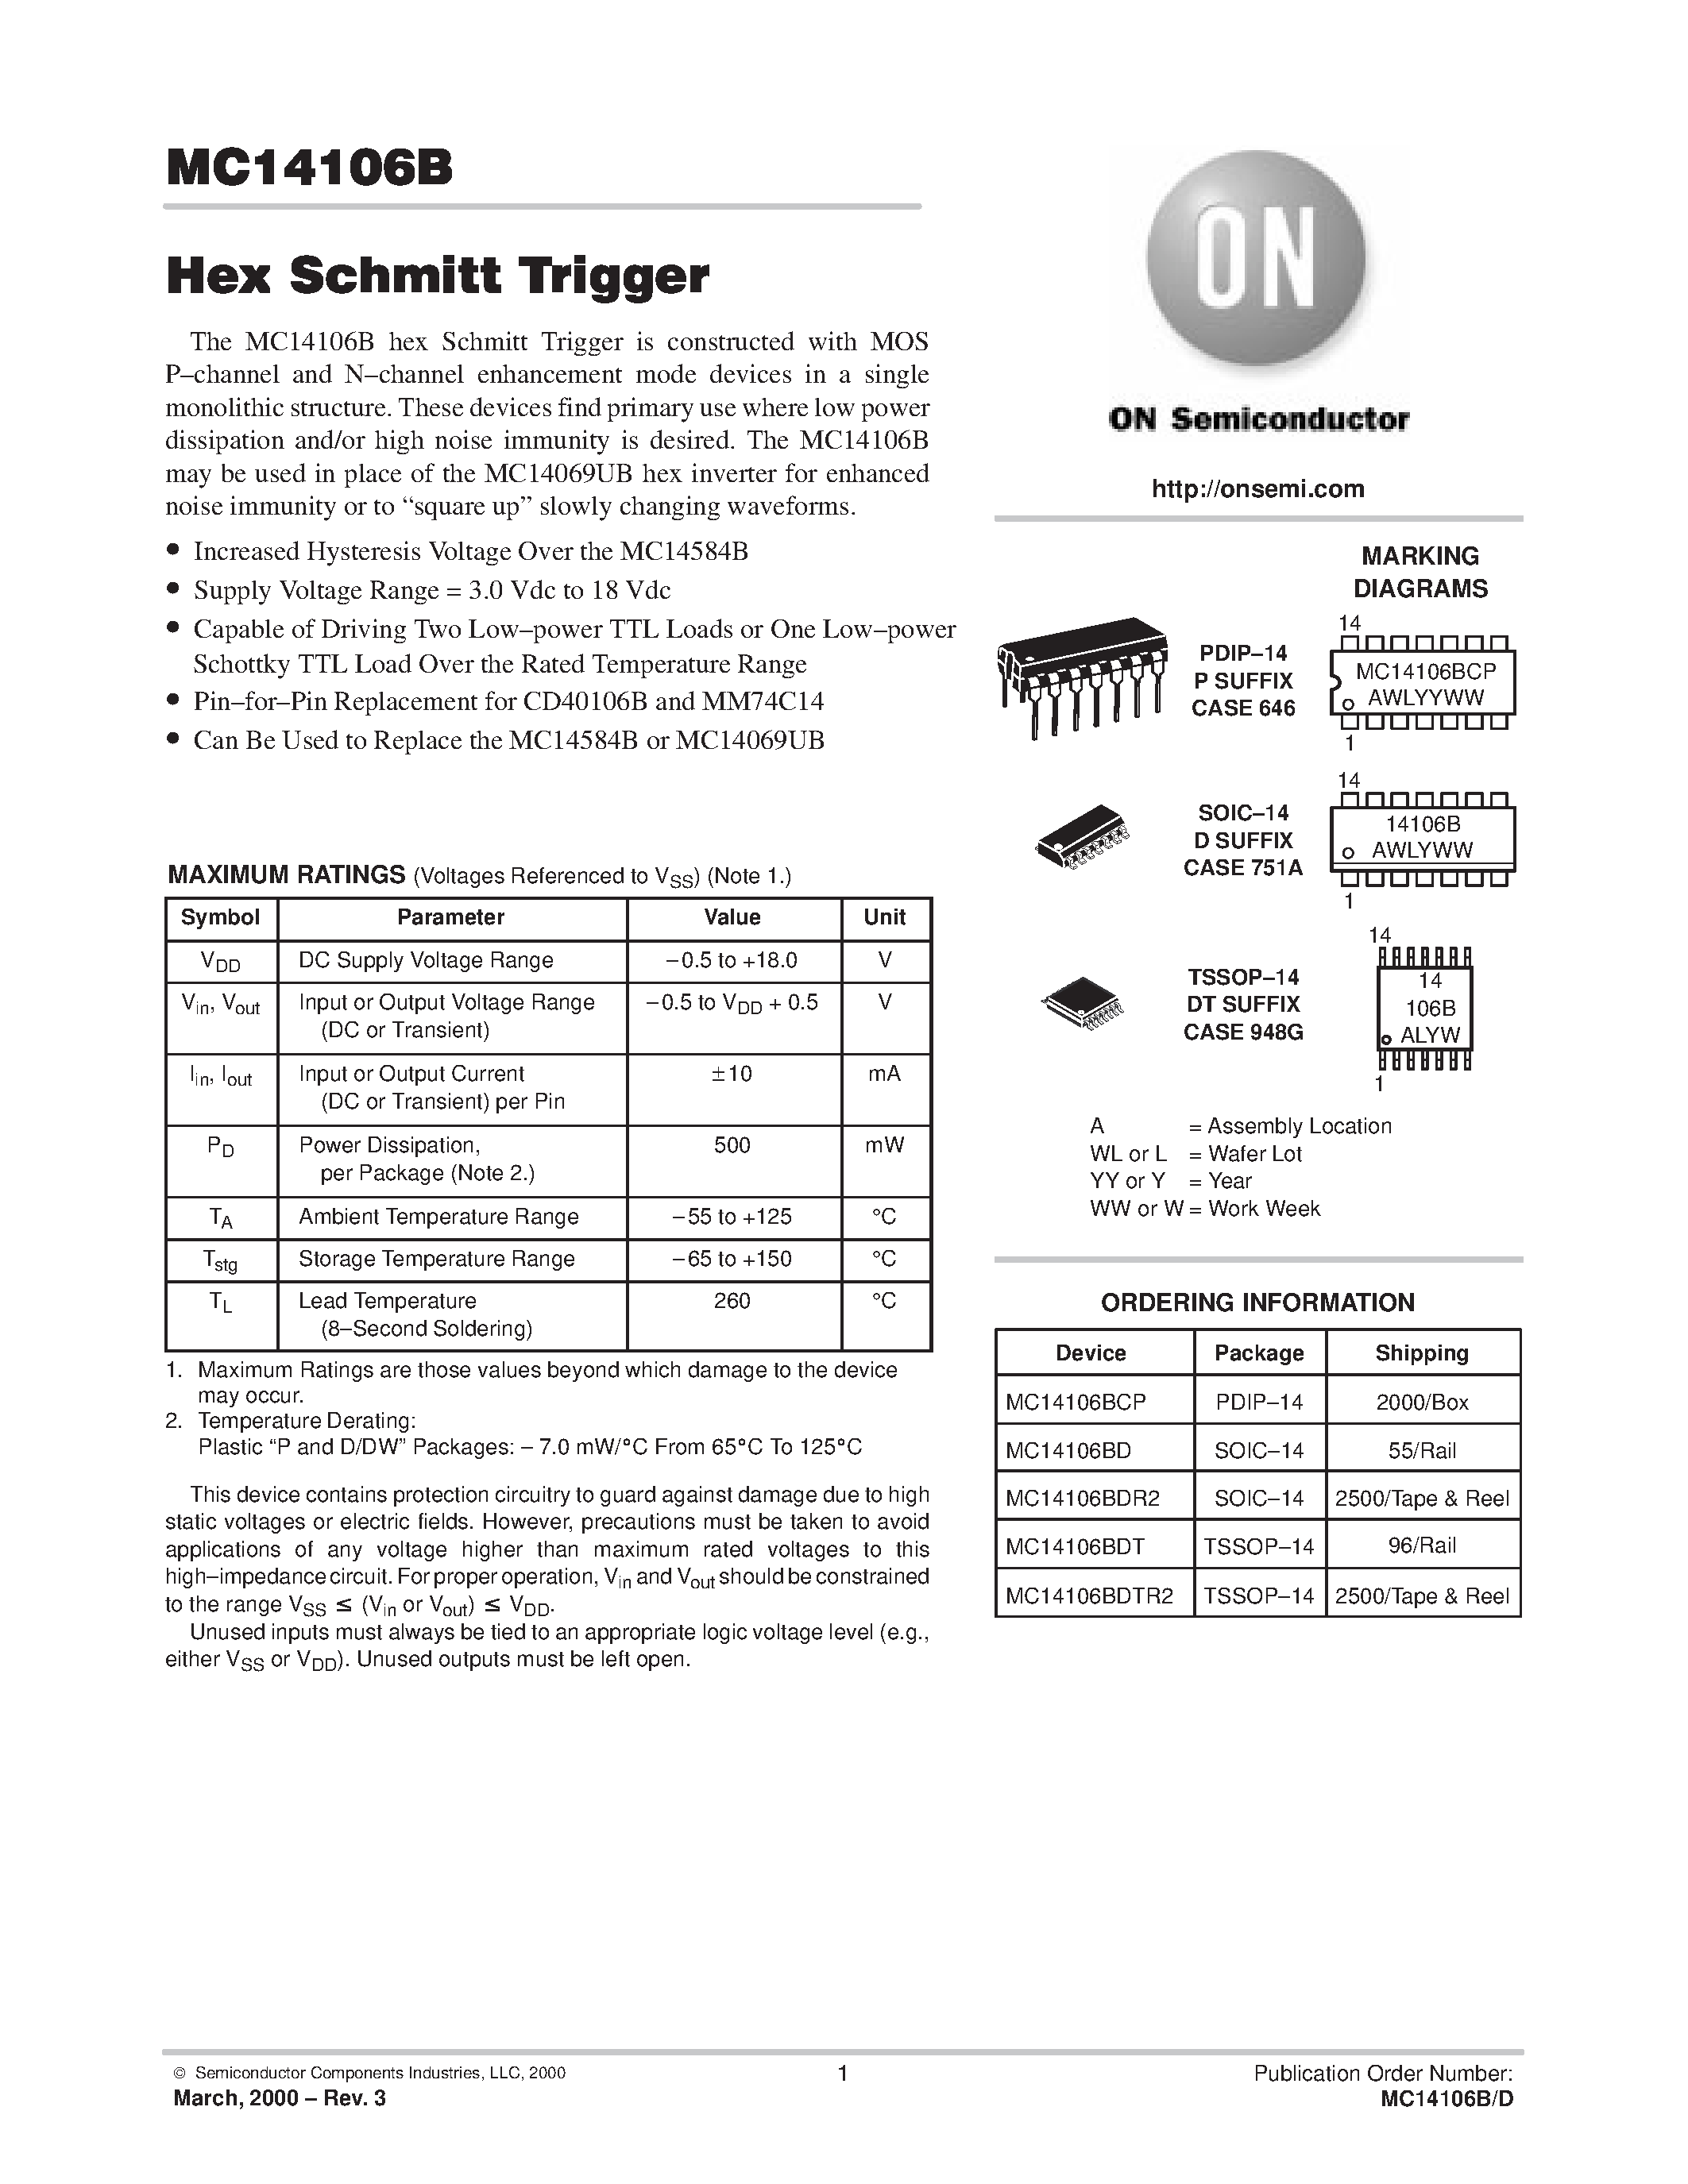 Datasheet MC14106BDTR2 - Hex Schmitt Trigger page 1